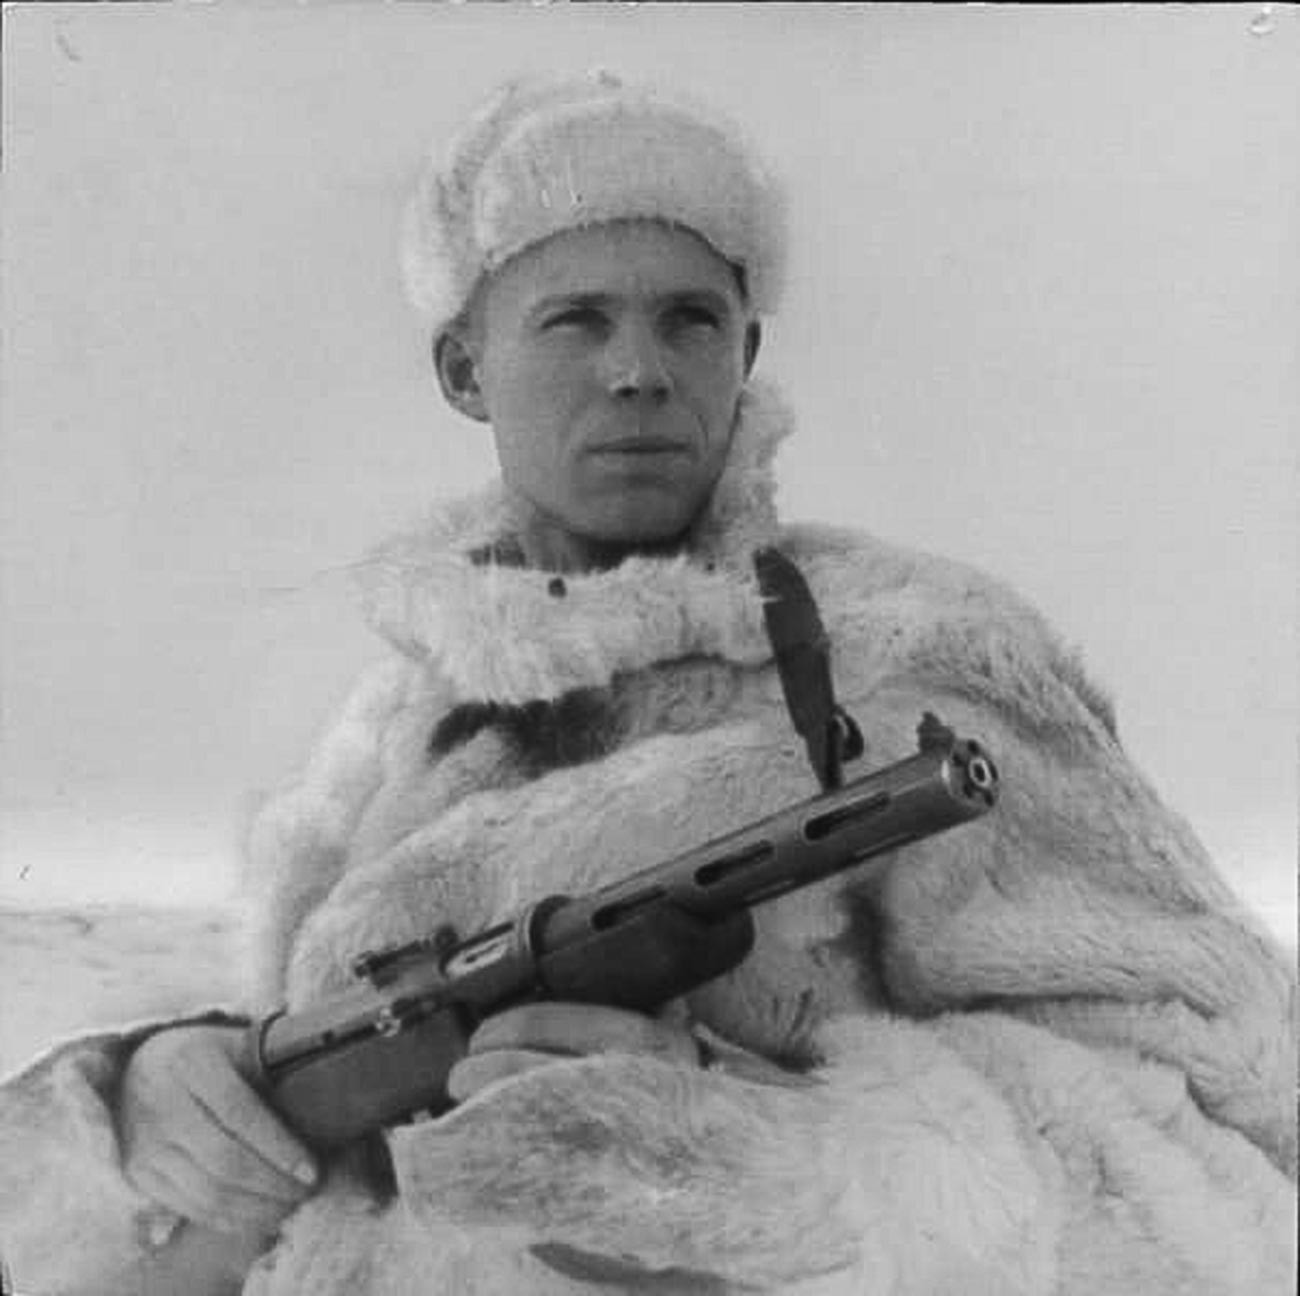 Sovjetski vojaški obveščevalni častnik v šubi, 1943
